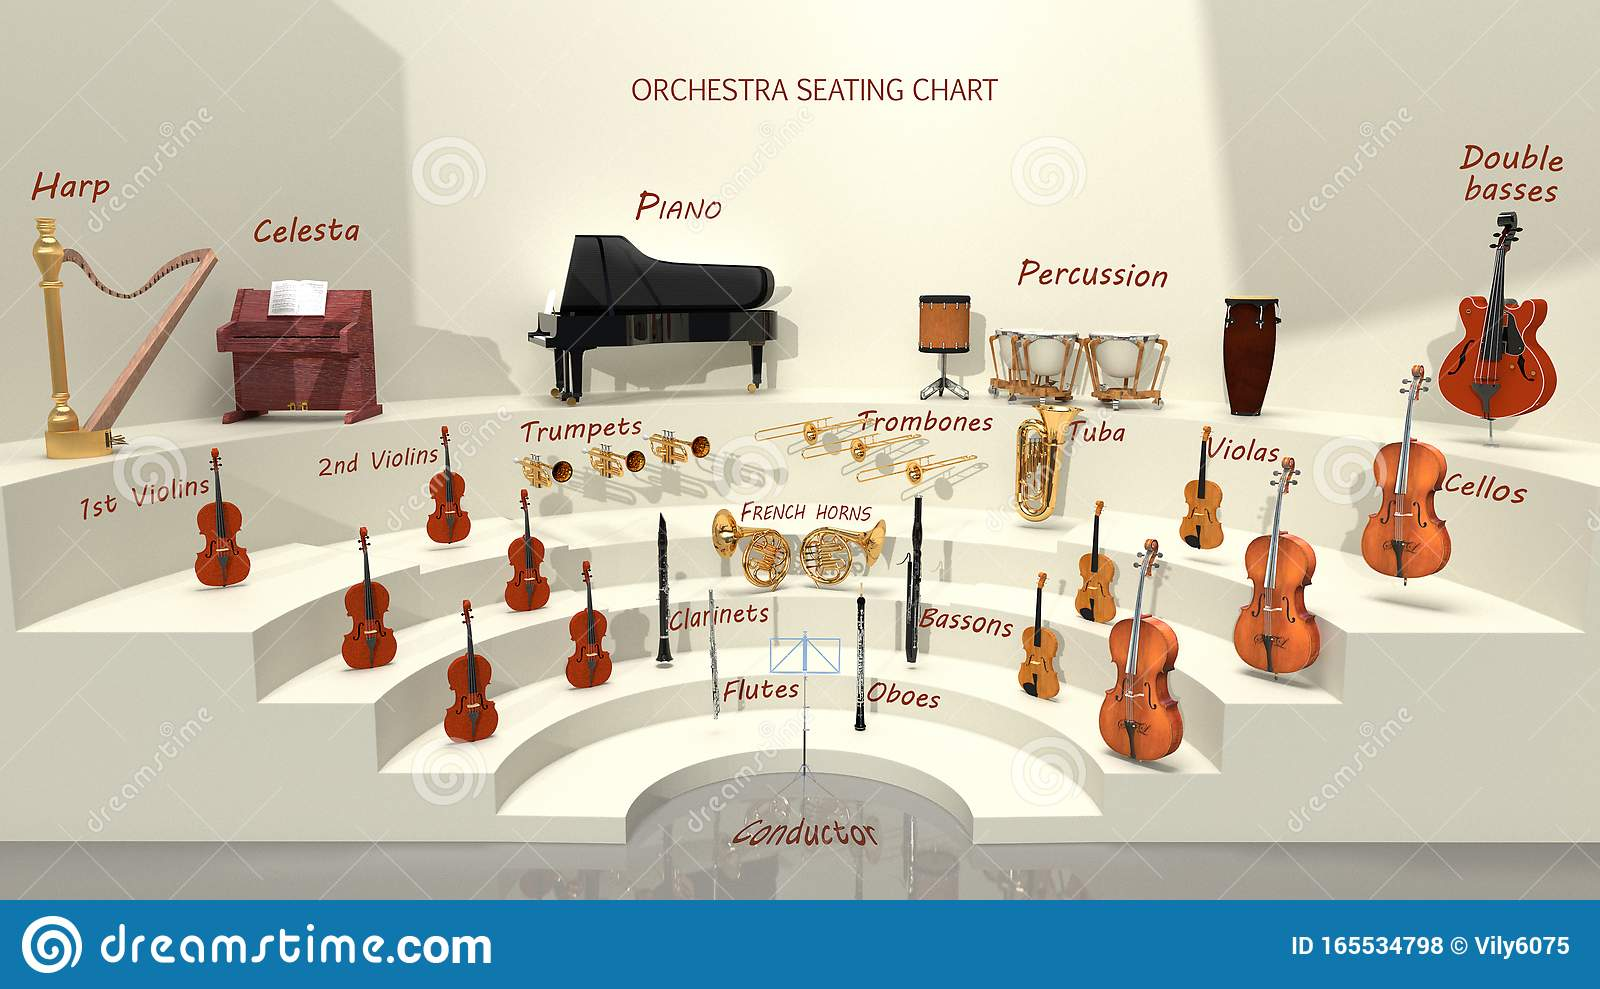 管弦乐团乐器分布图图片